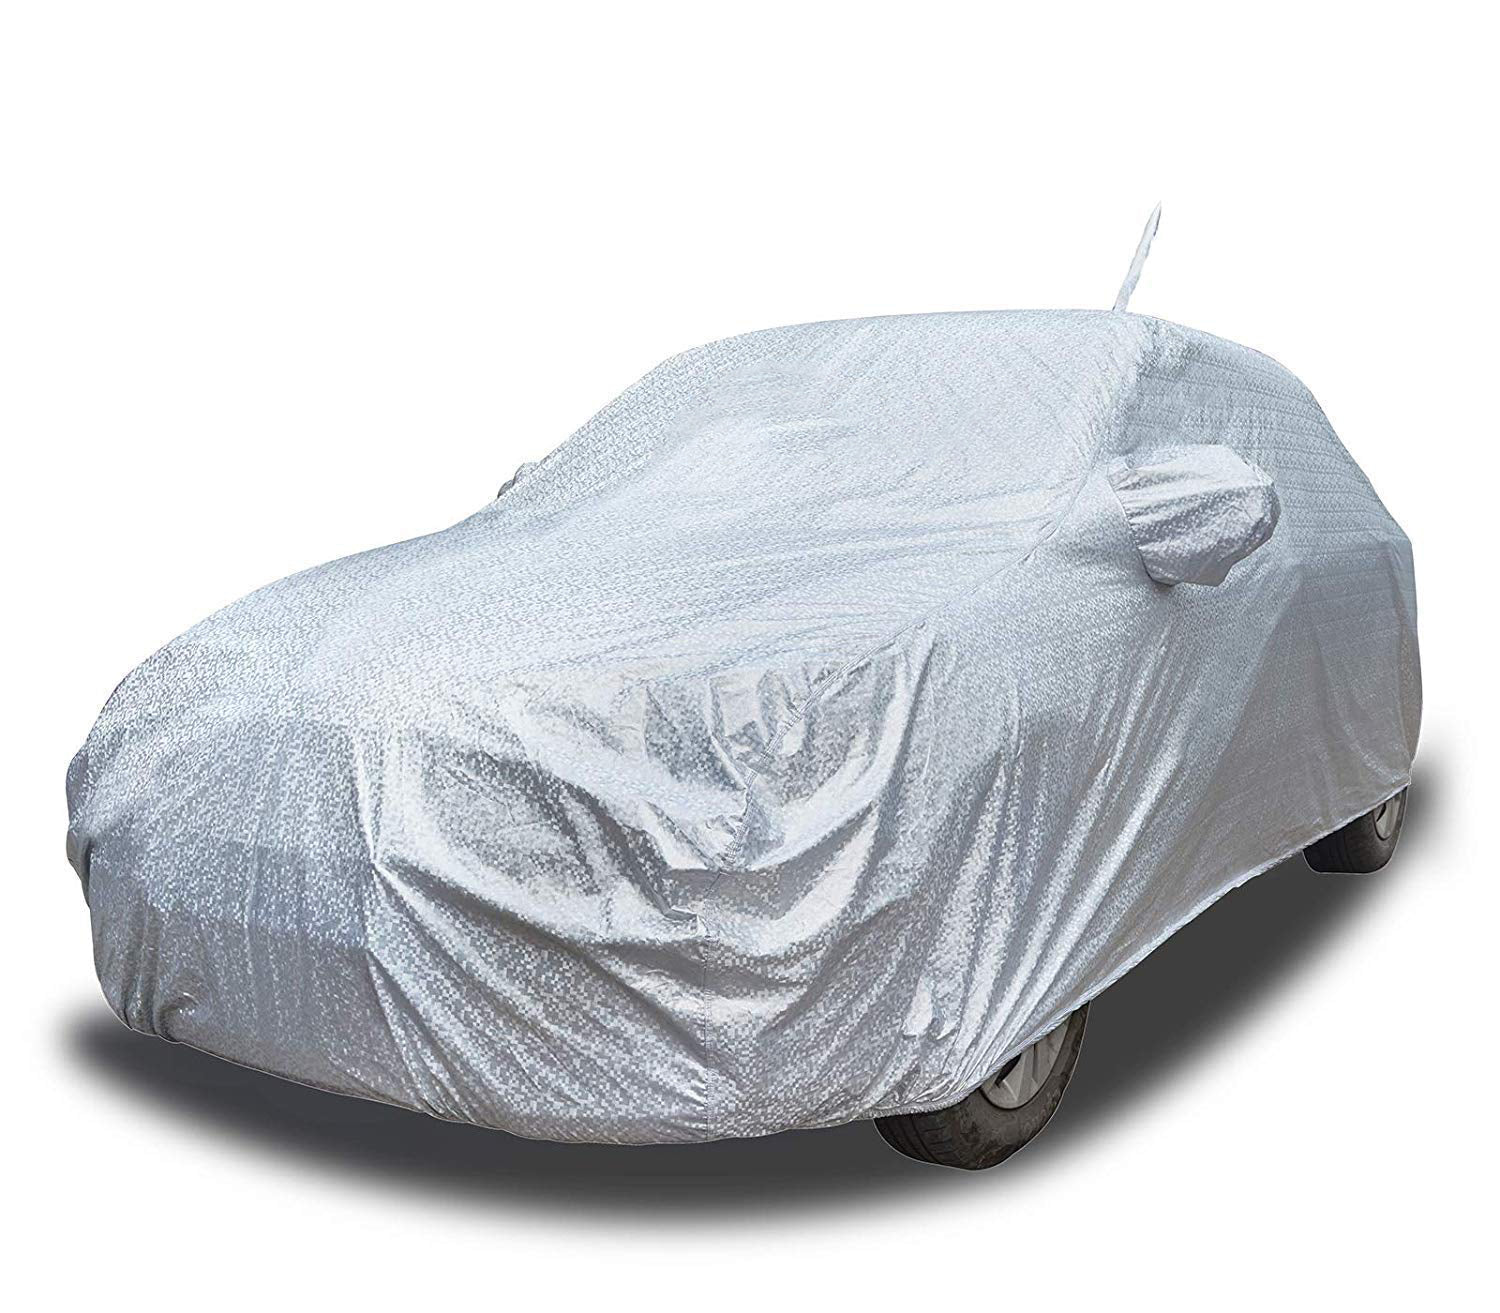 Buy Maruti Swift Dzire Waterproof Car Cover AERO Silver Online